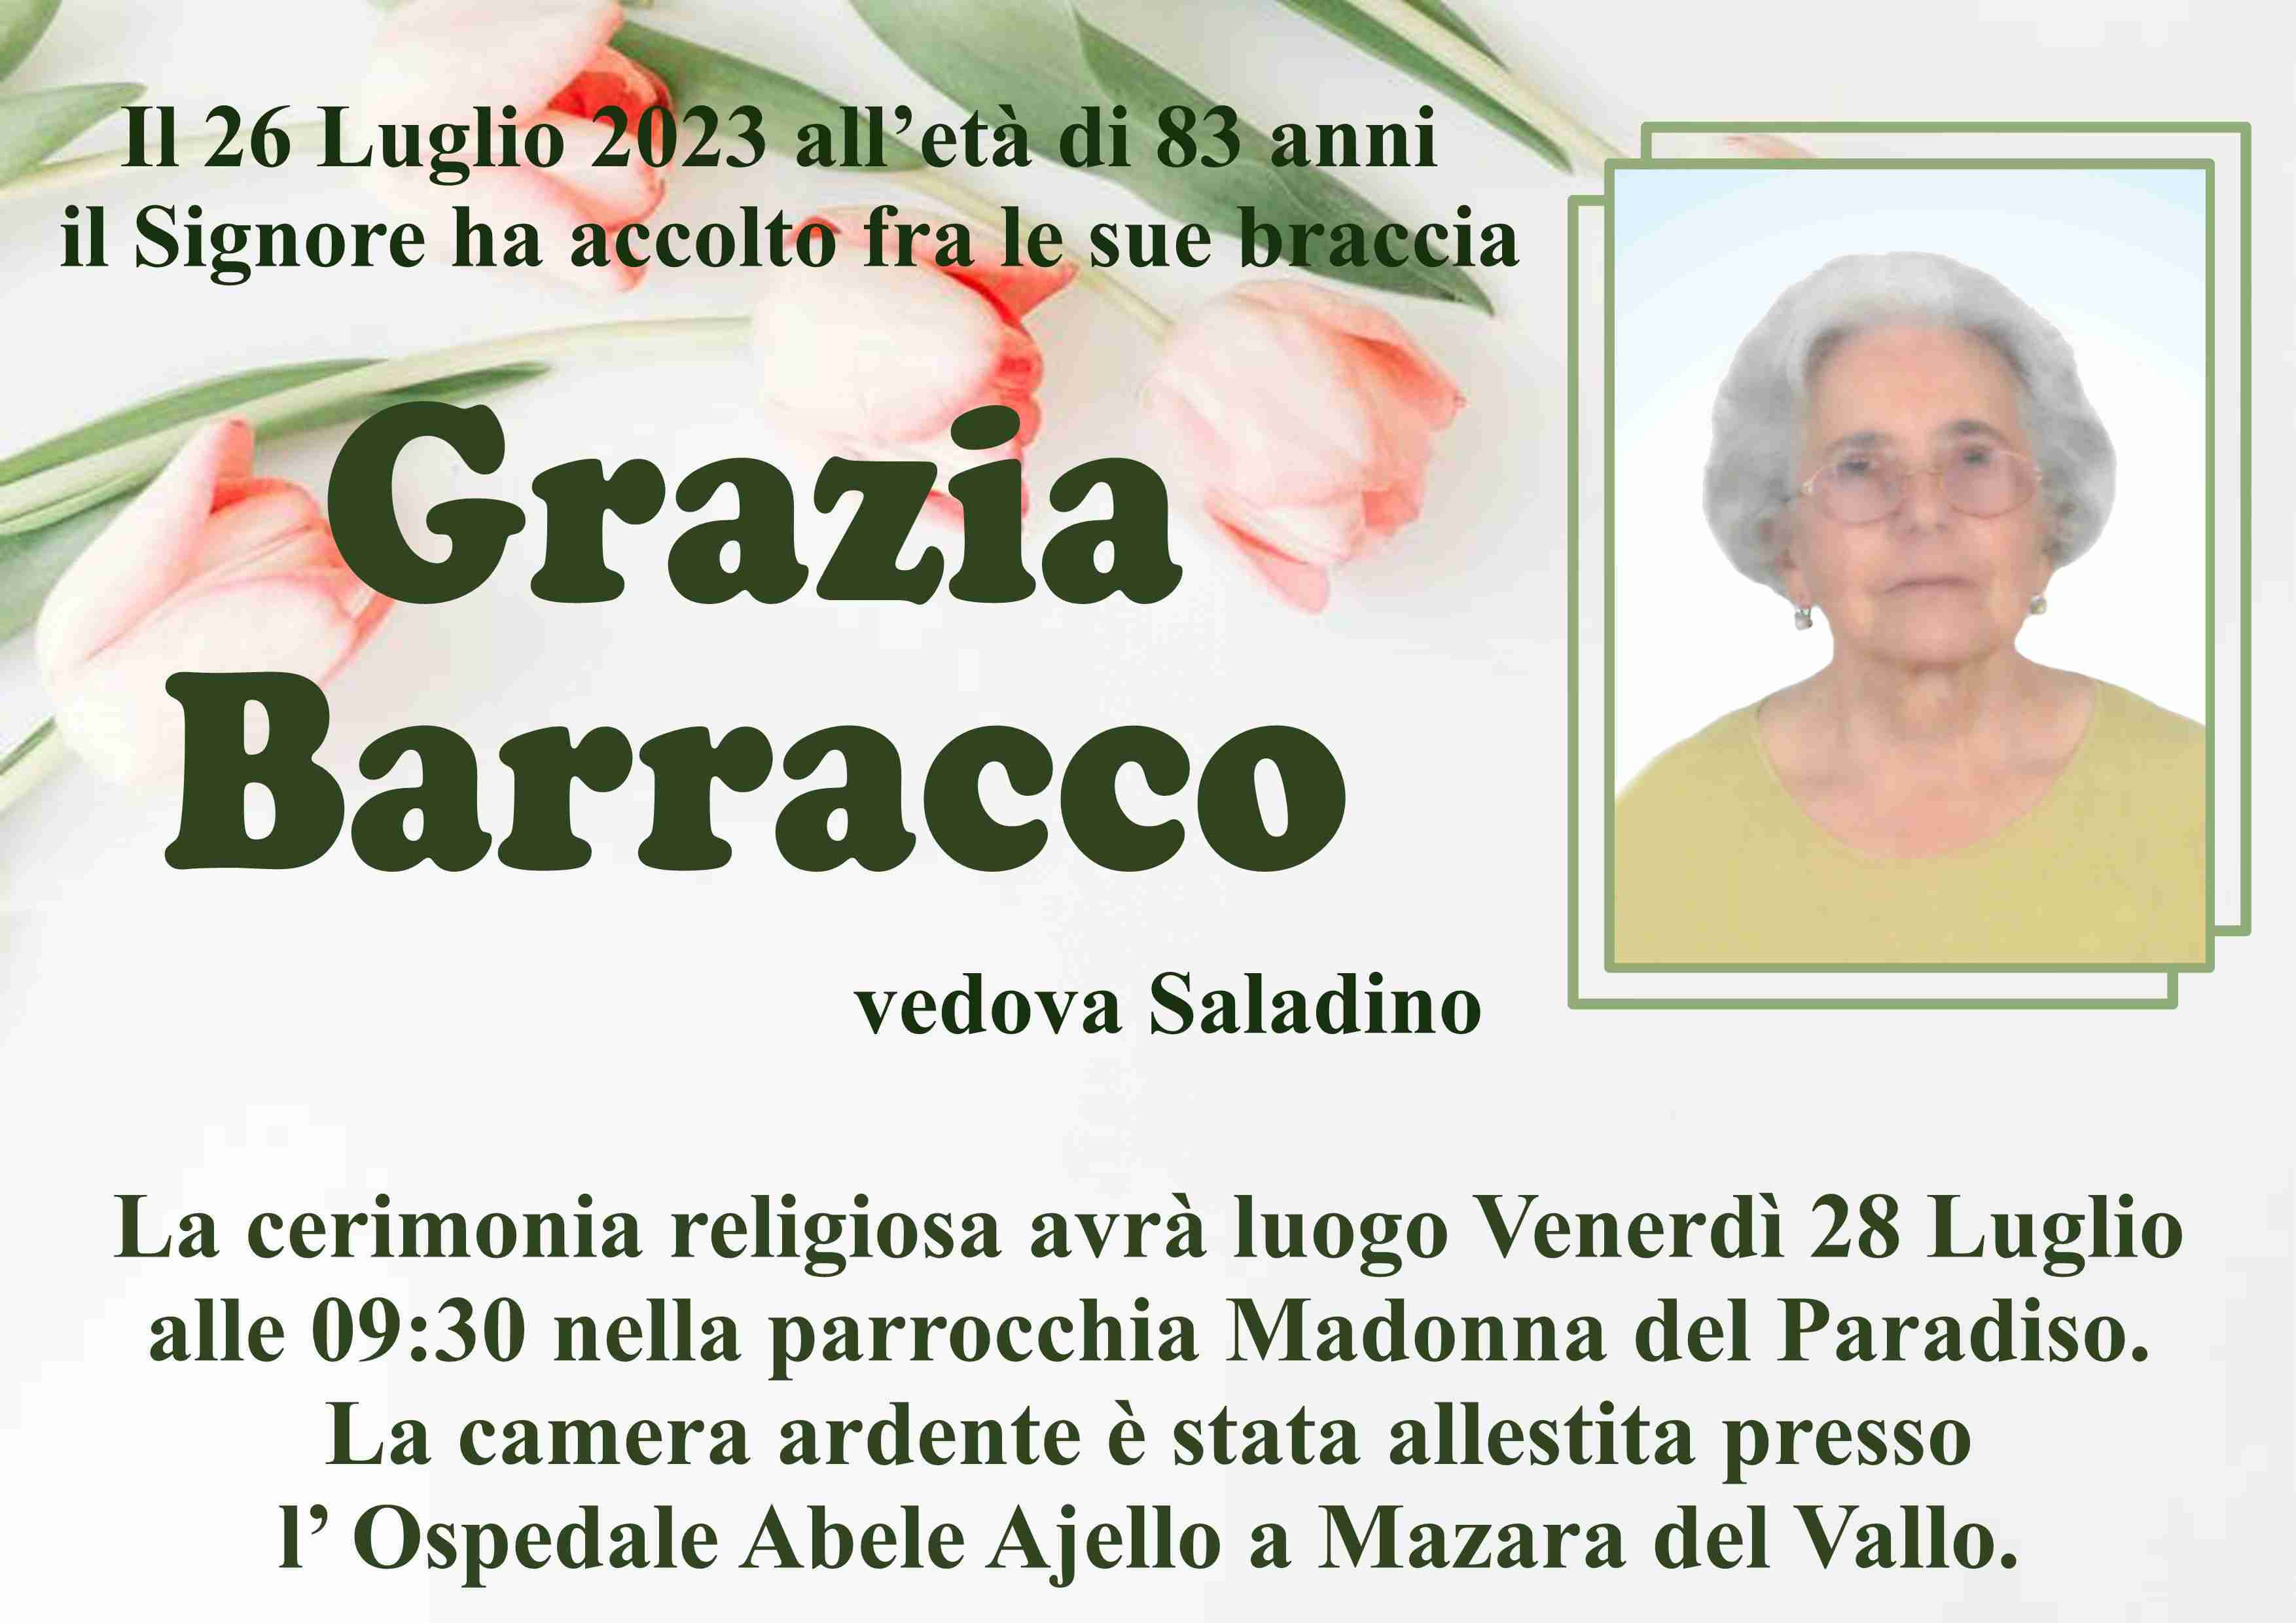 Grazia Barracco